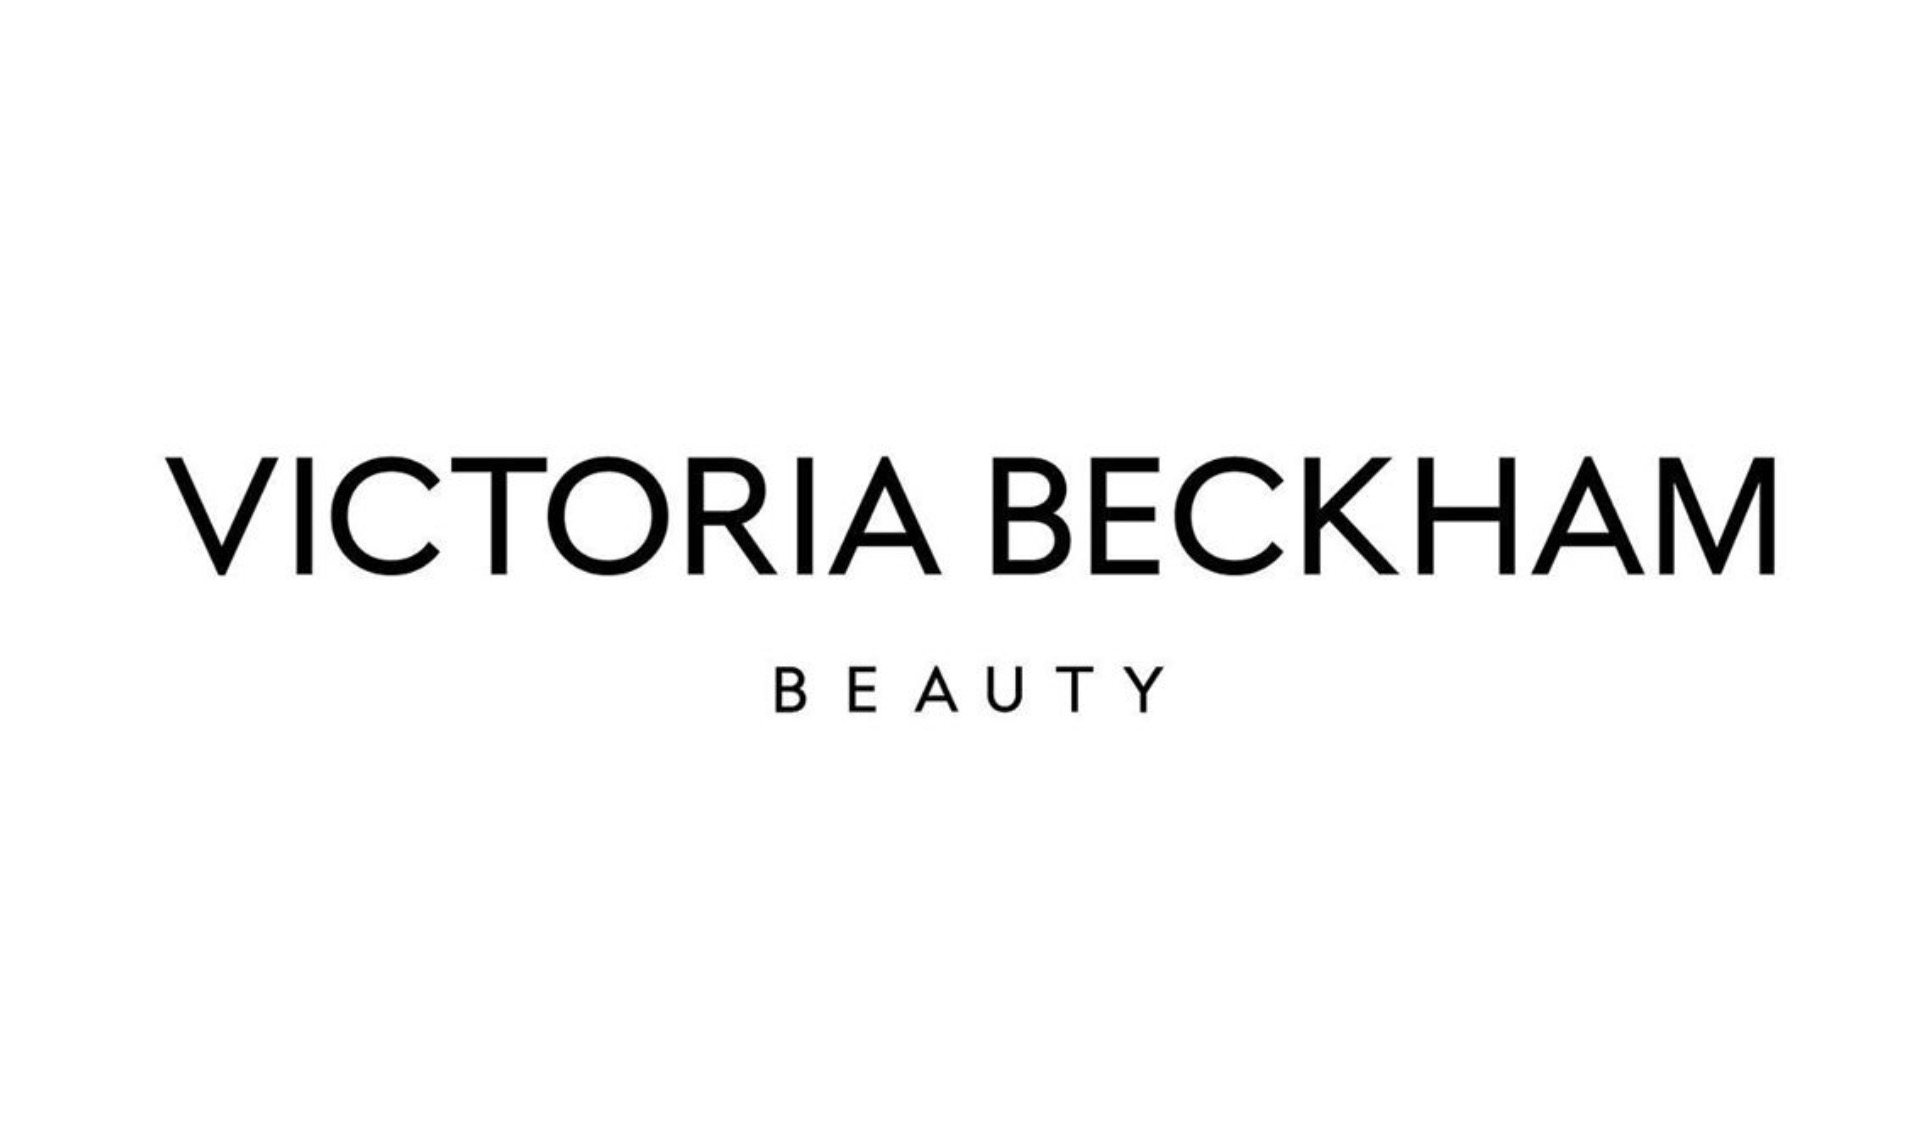 贝嫂美妆品牌 Victoria Beckham Beauty 即将上线